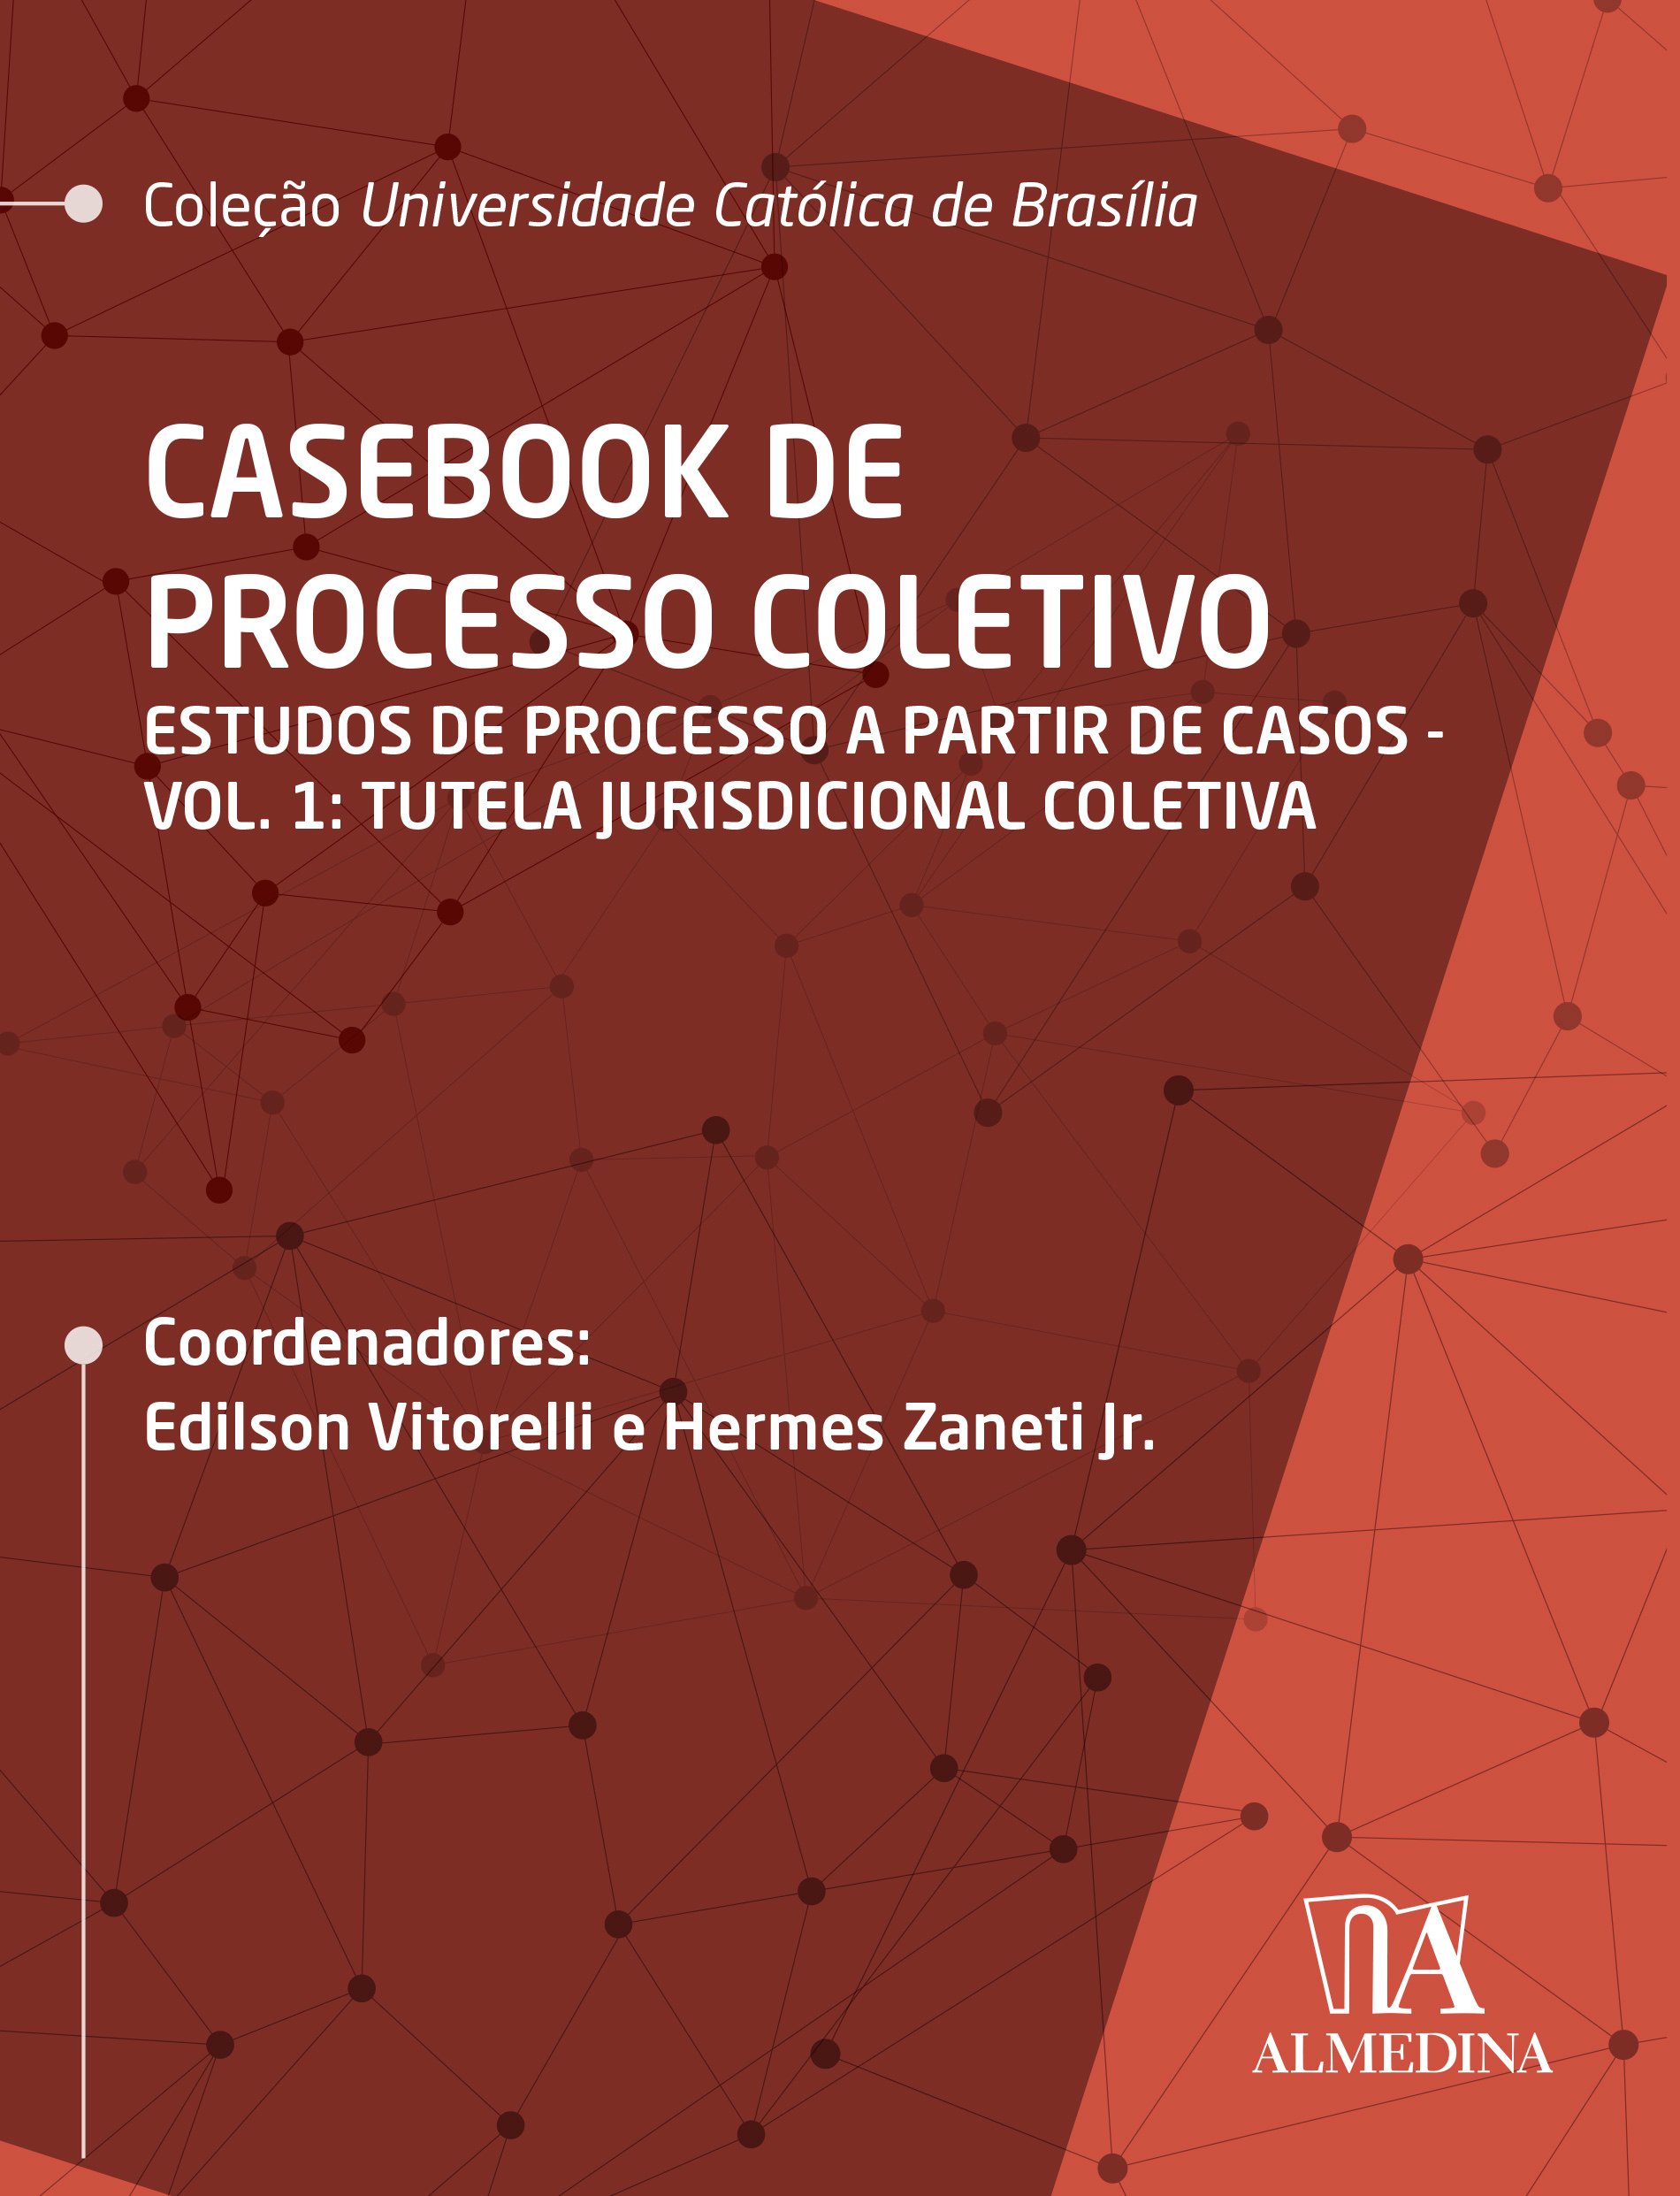 Casebook de Processo Coletivo – Vol. I